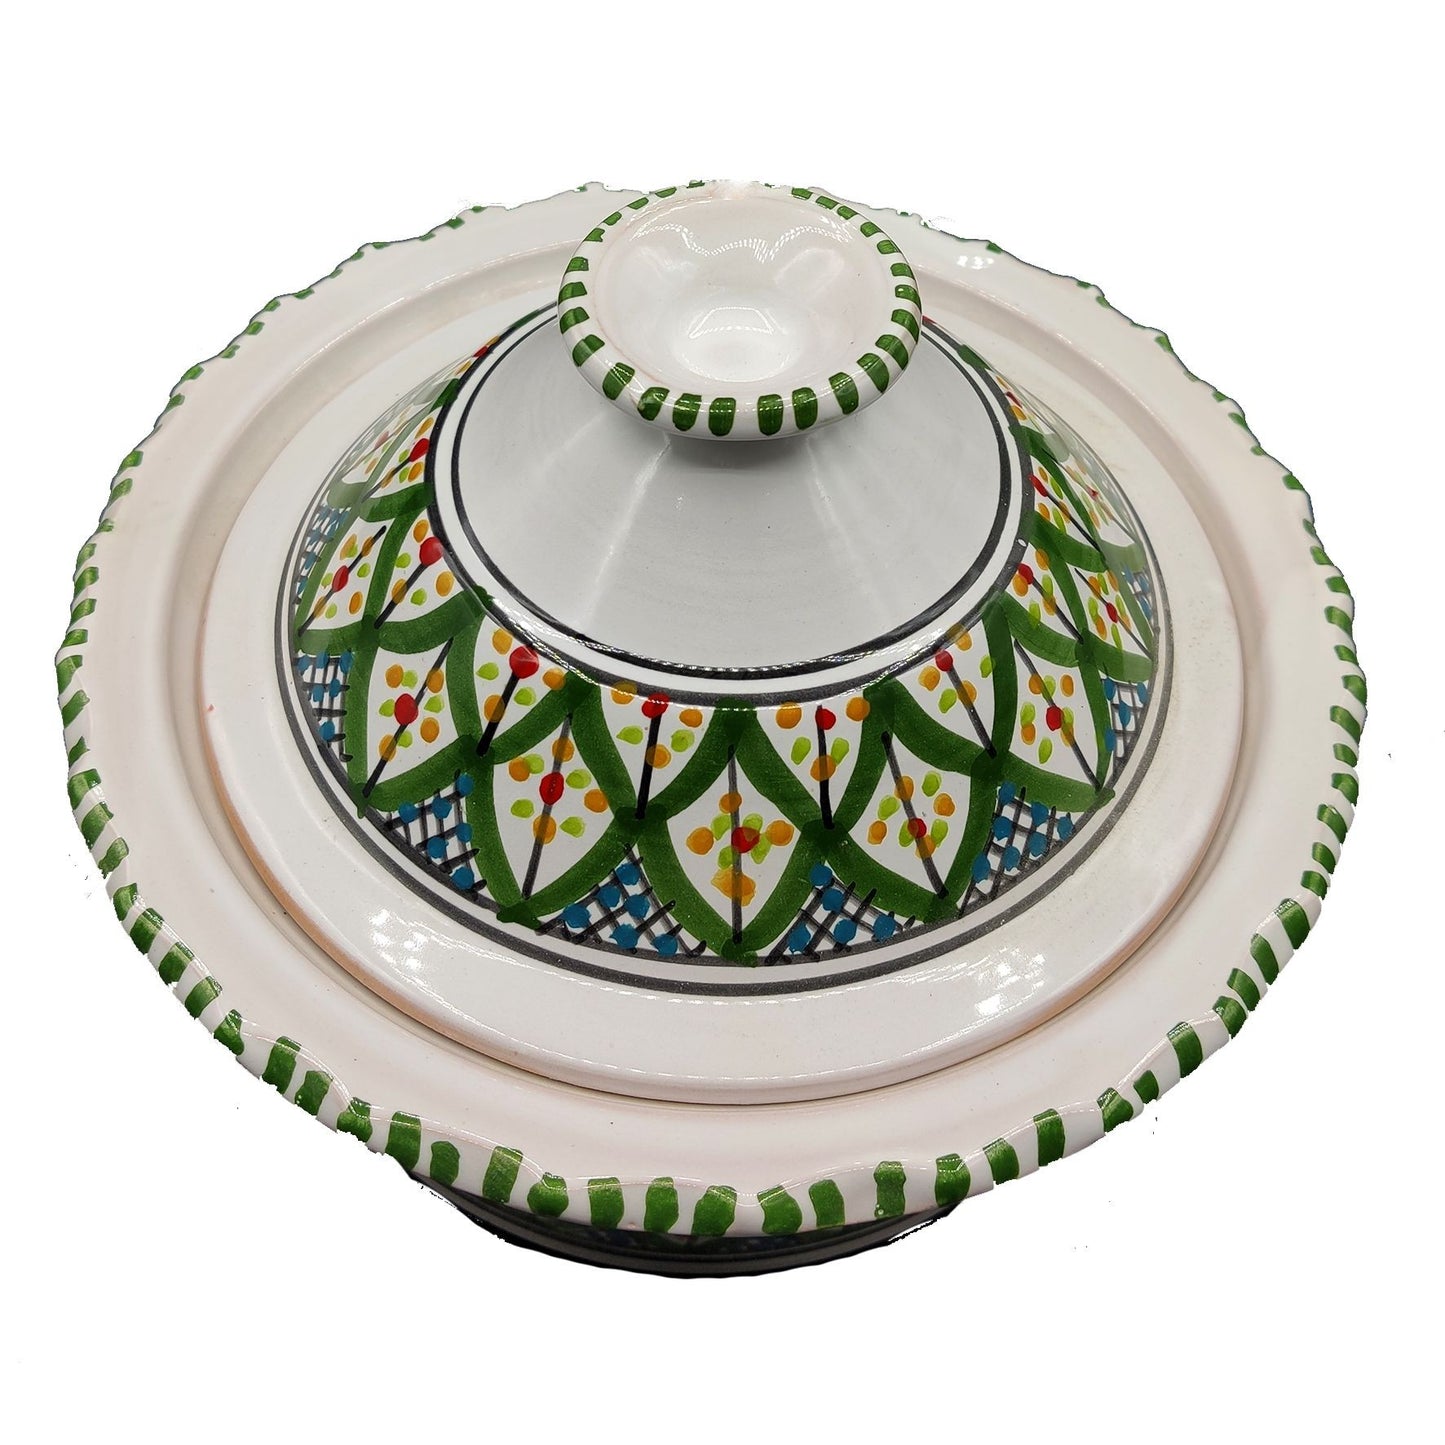 Pentola da Servizio Zuppiera Ceramica Etnica Tunisina Marocchina 2212200931